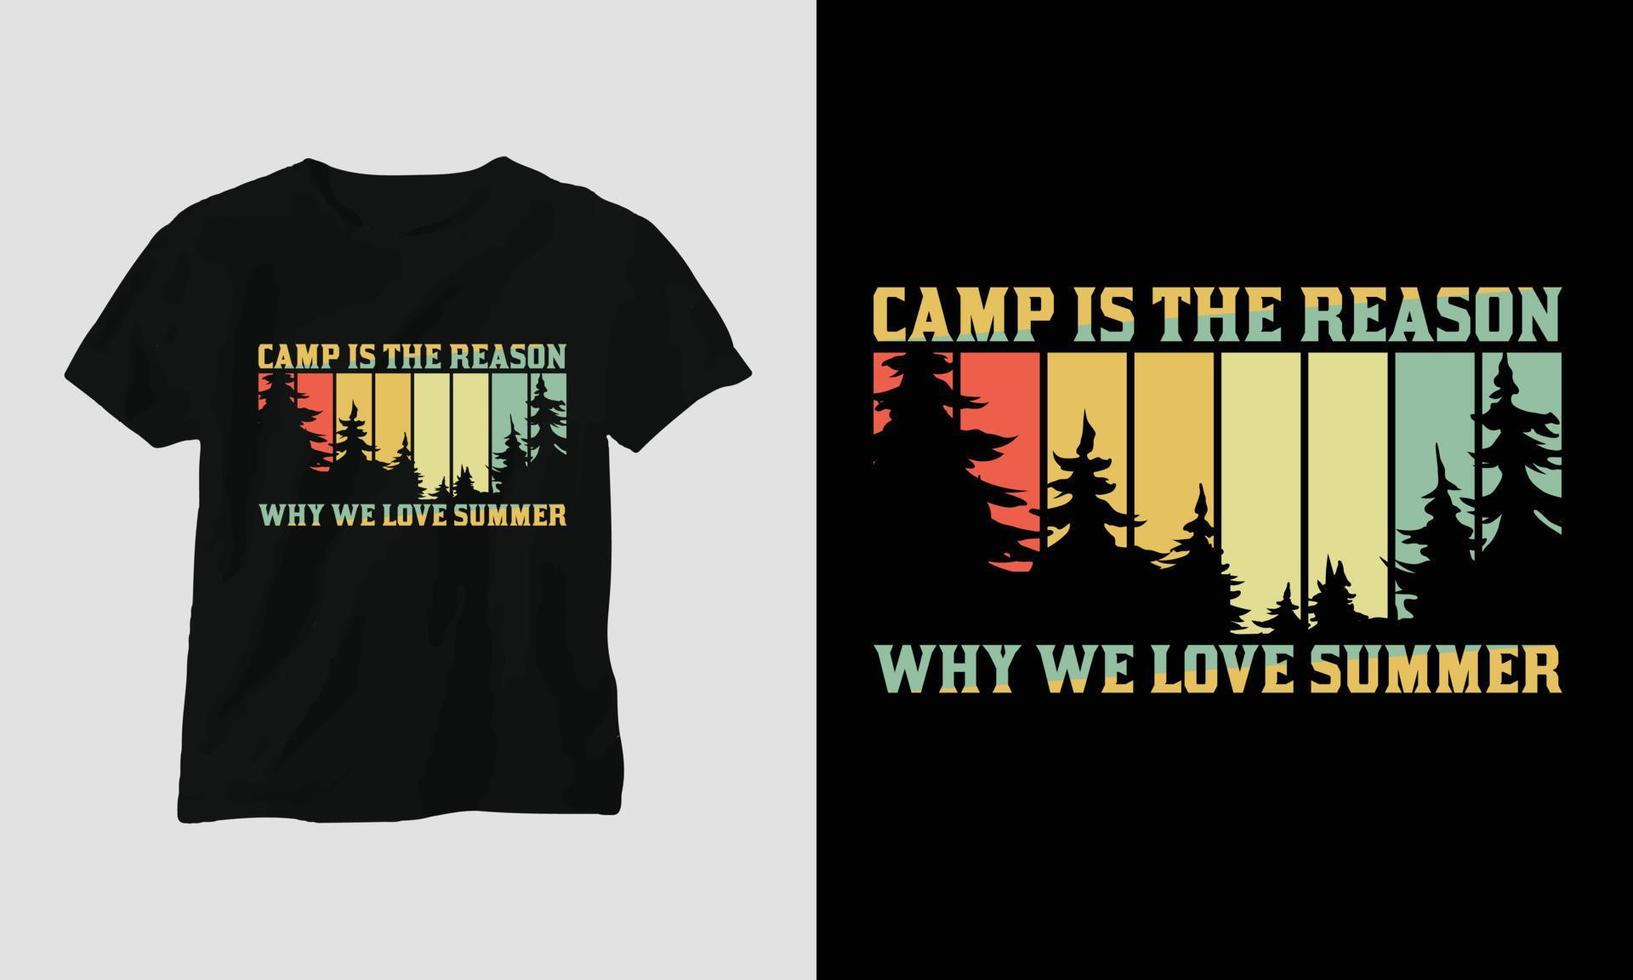 läger är de anledning Varför vi kärlek sommar - camping t-shirt design vektor